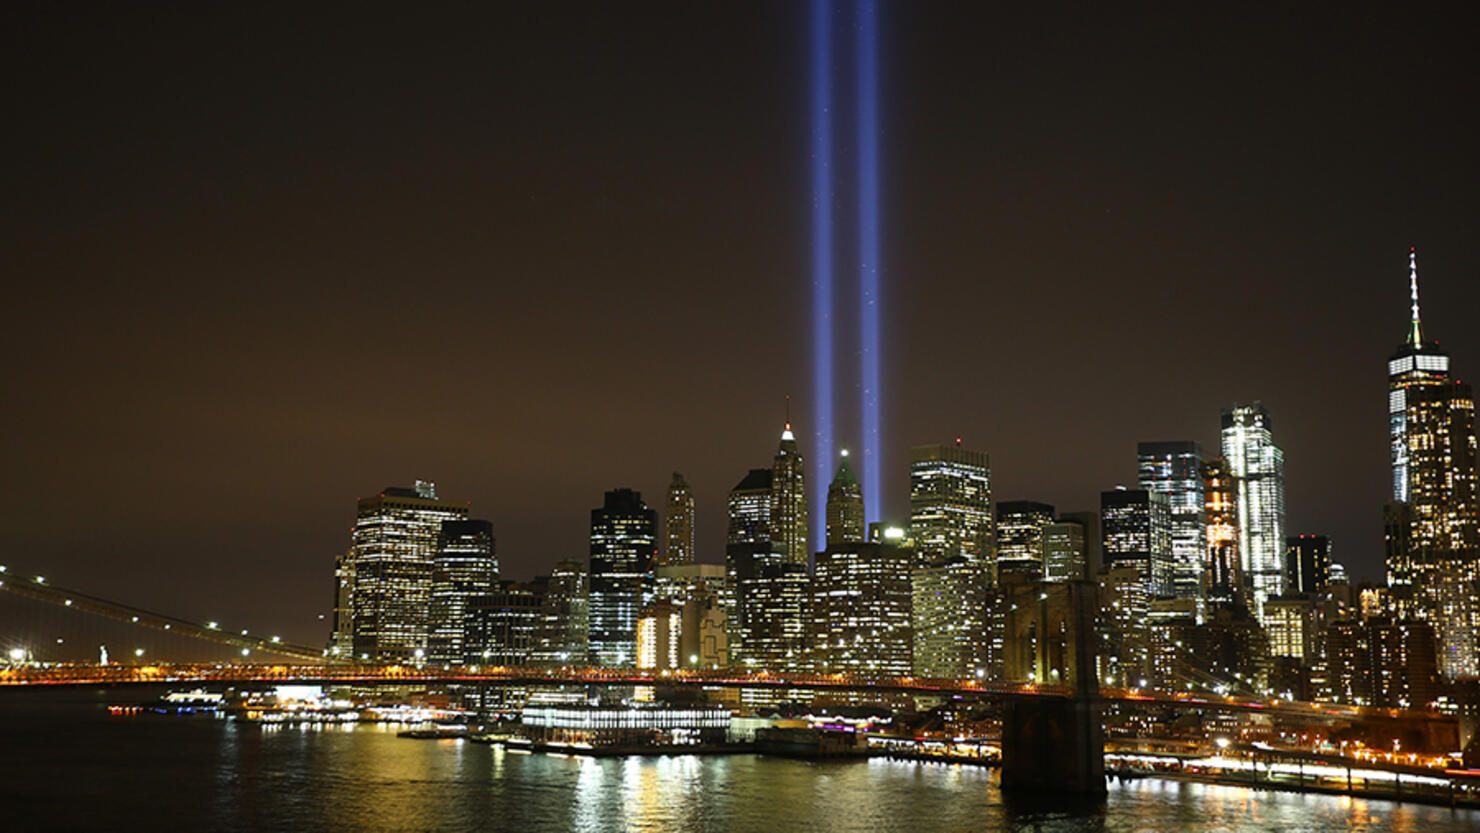 9/11 Memorial "Tribute in Light"